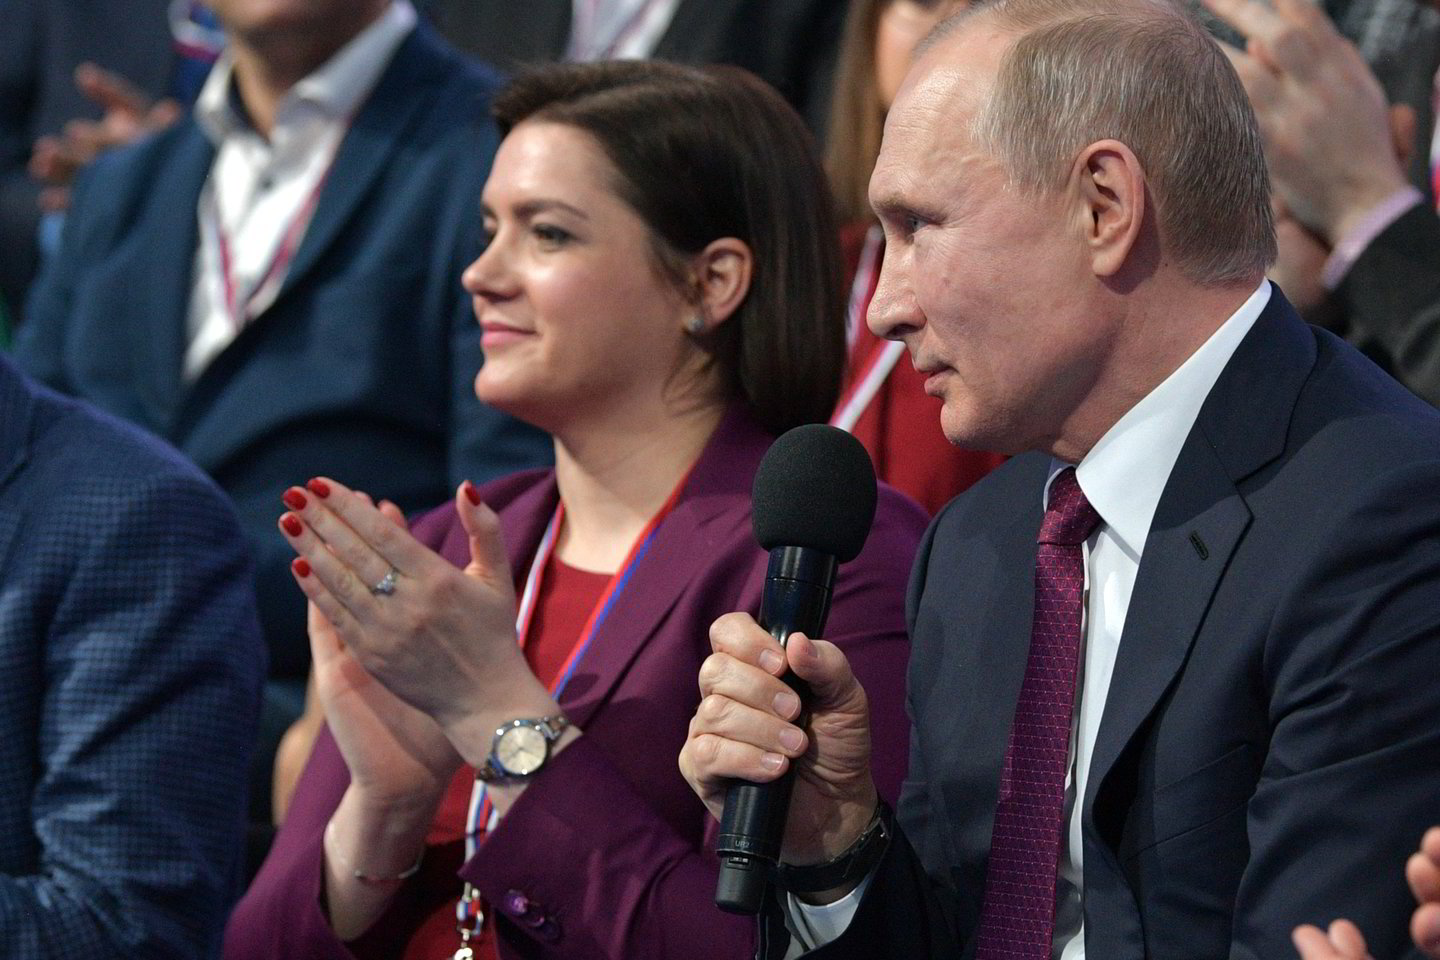  V.Putinas sakė, kad nenorėtų sužinoti, kas su juo nutiks po penkerių ar 10 metų.<br> Sputnik/Scanpix nuotr.